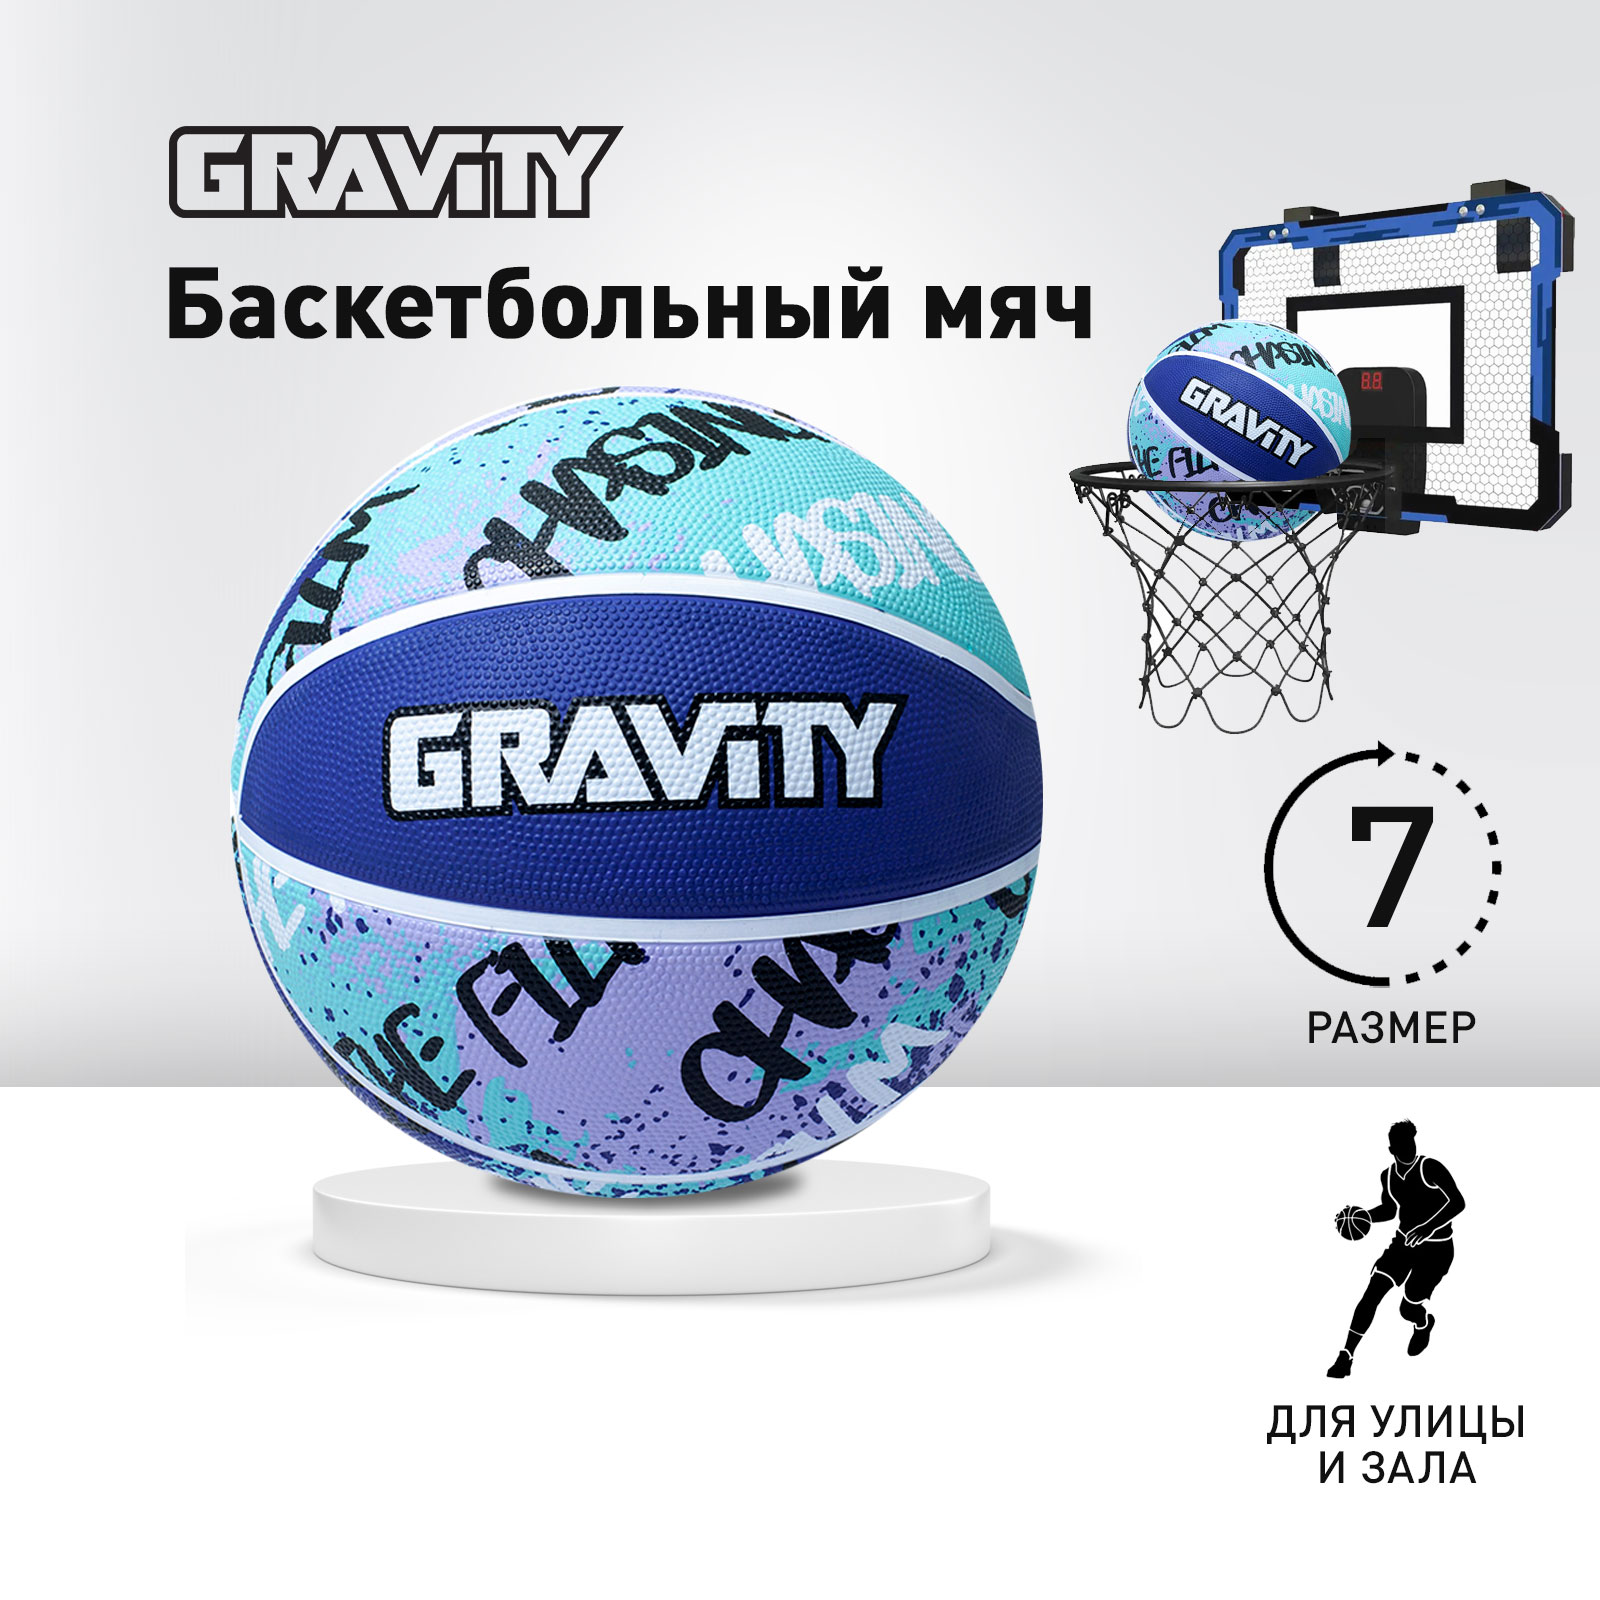 Баскетбольный мяч Gravity, резиновый, розово-бирюзовый, размер 7